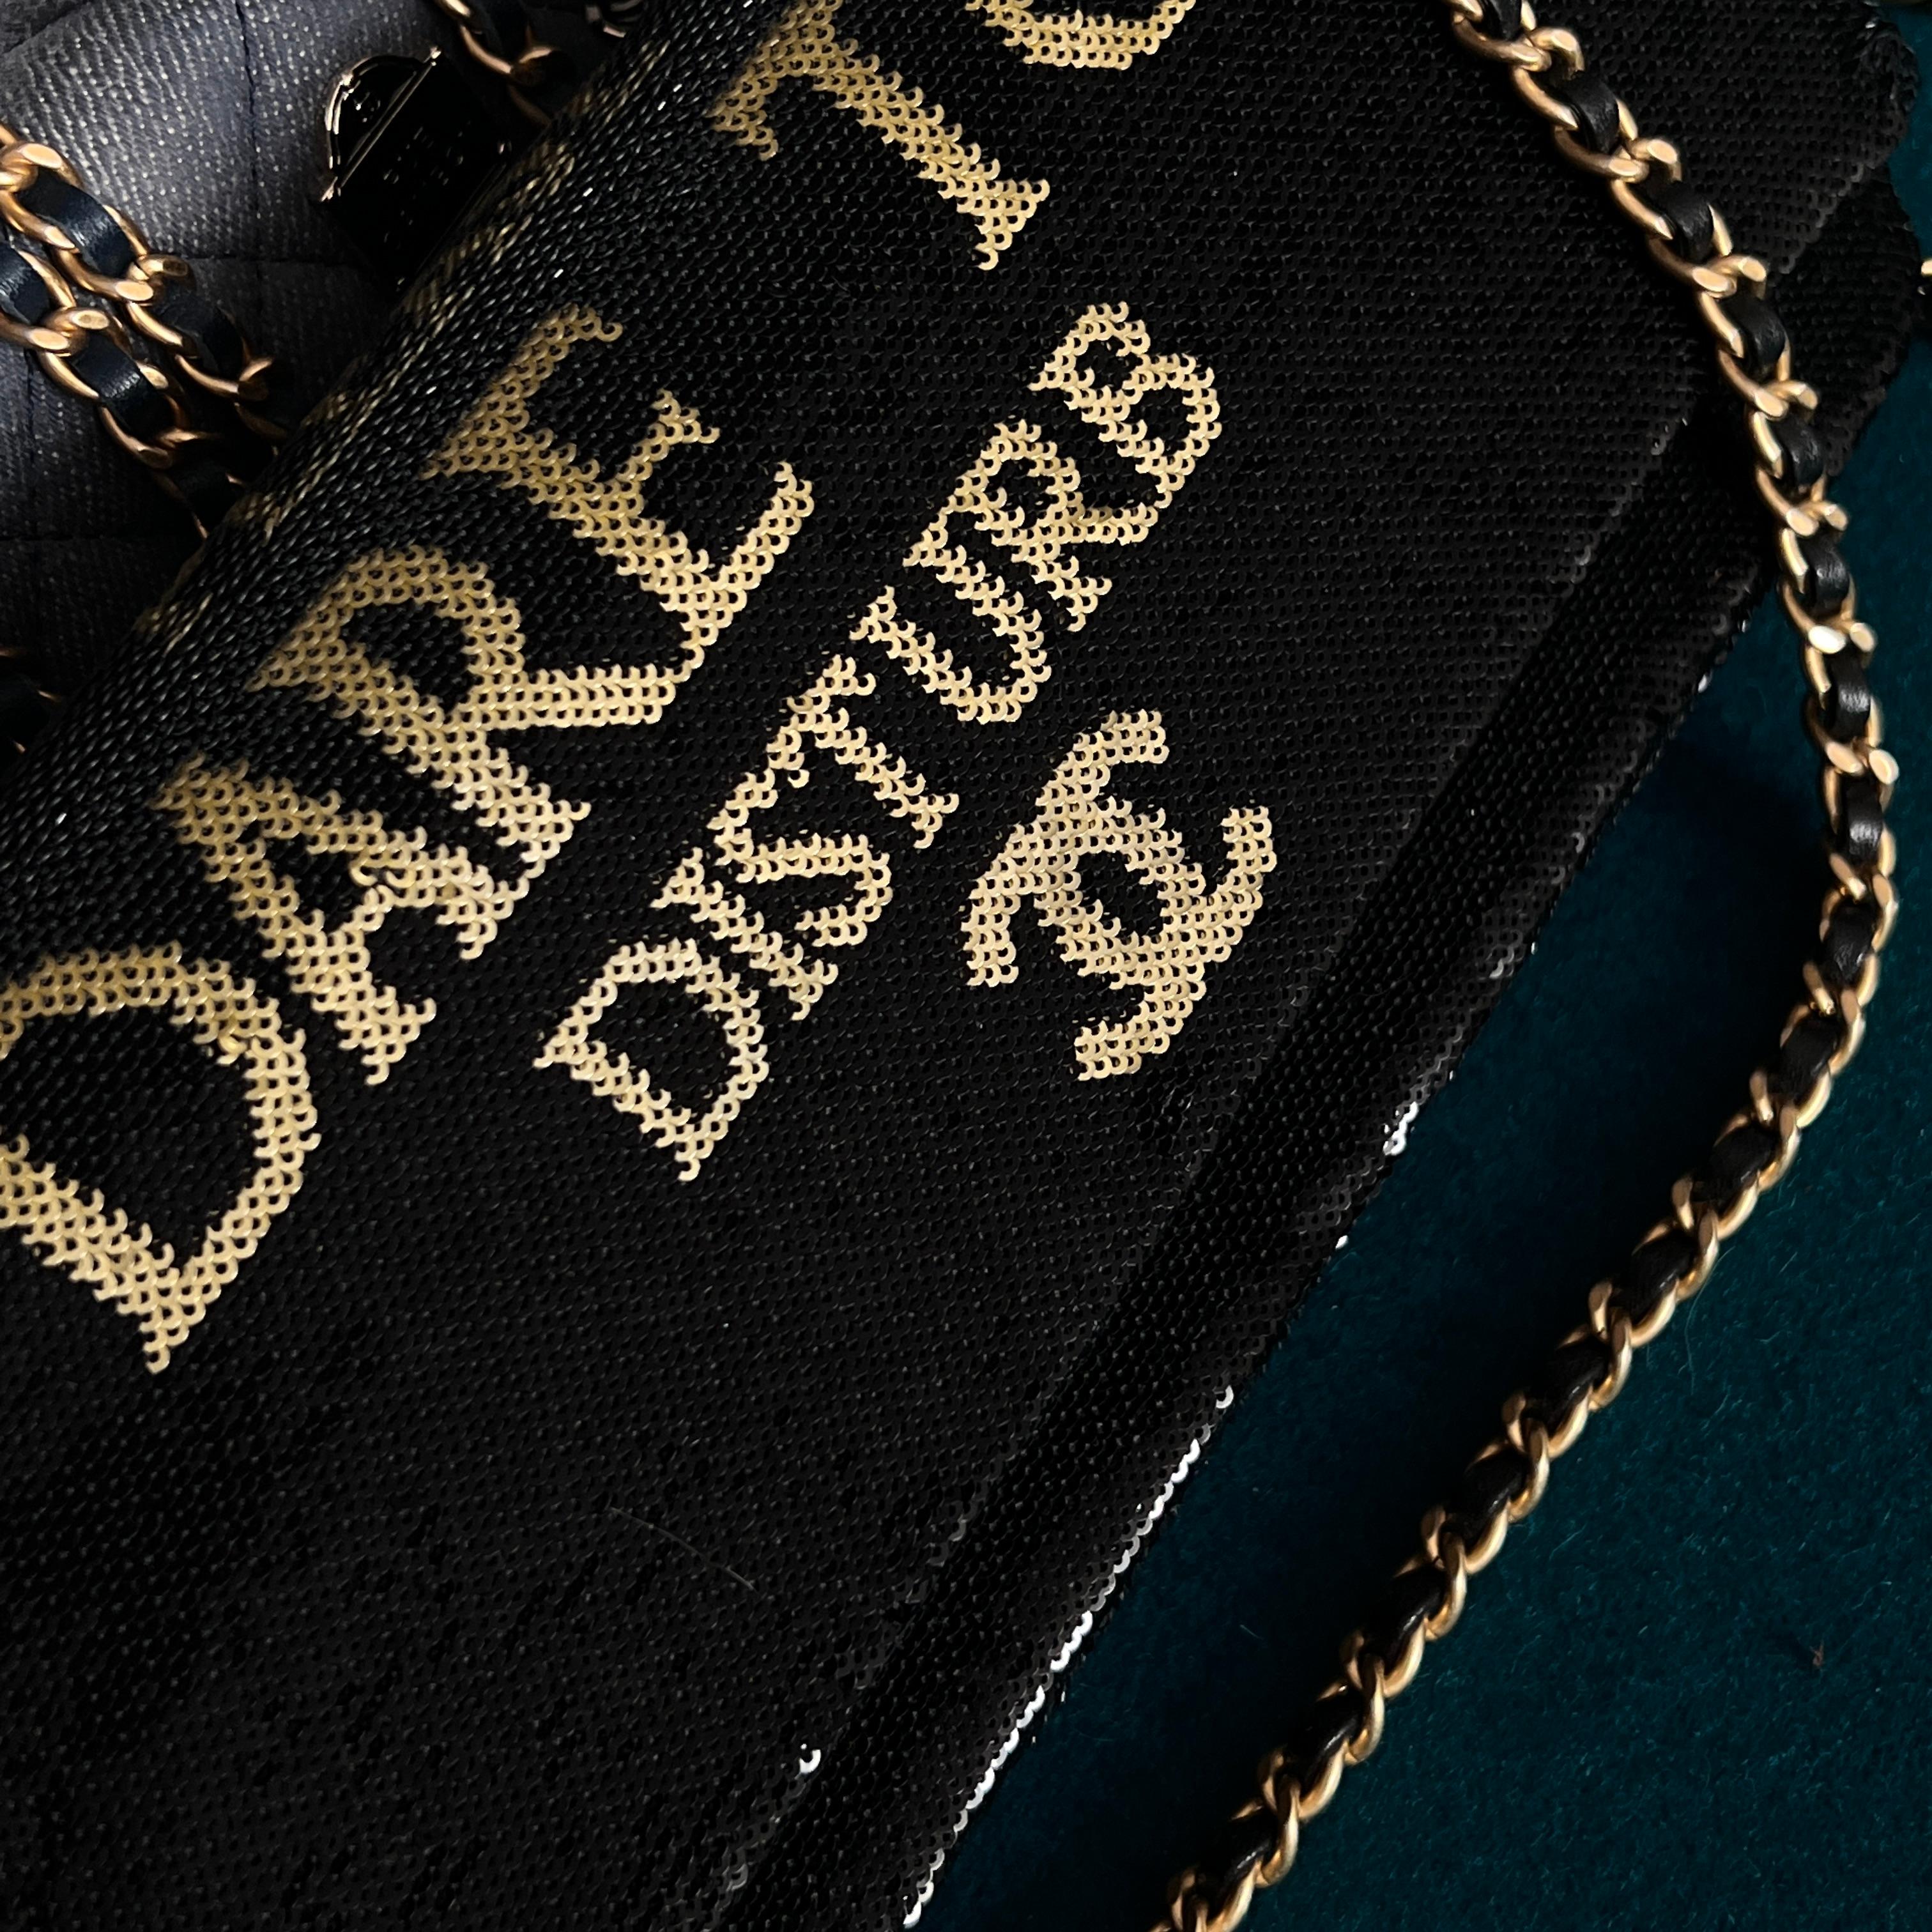 Chanel Super Rare Dare To Disturb Sequin Flap Bag For Sale 4